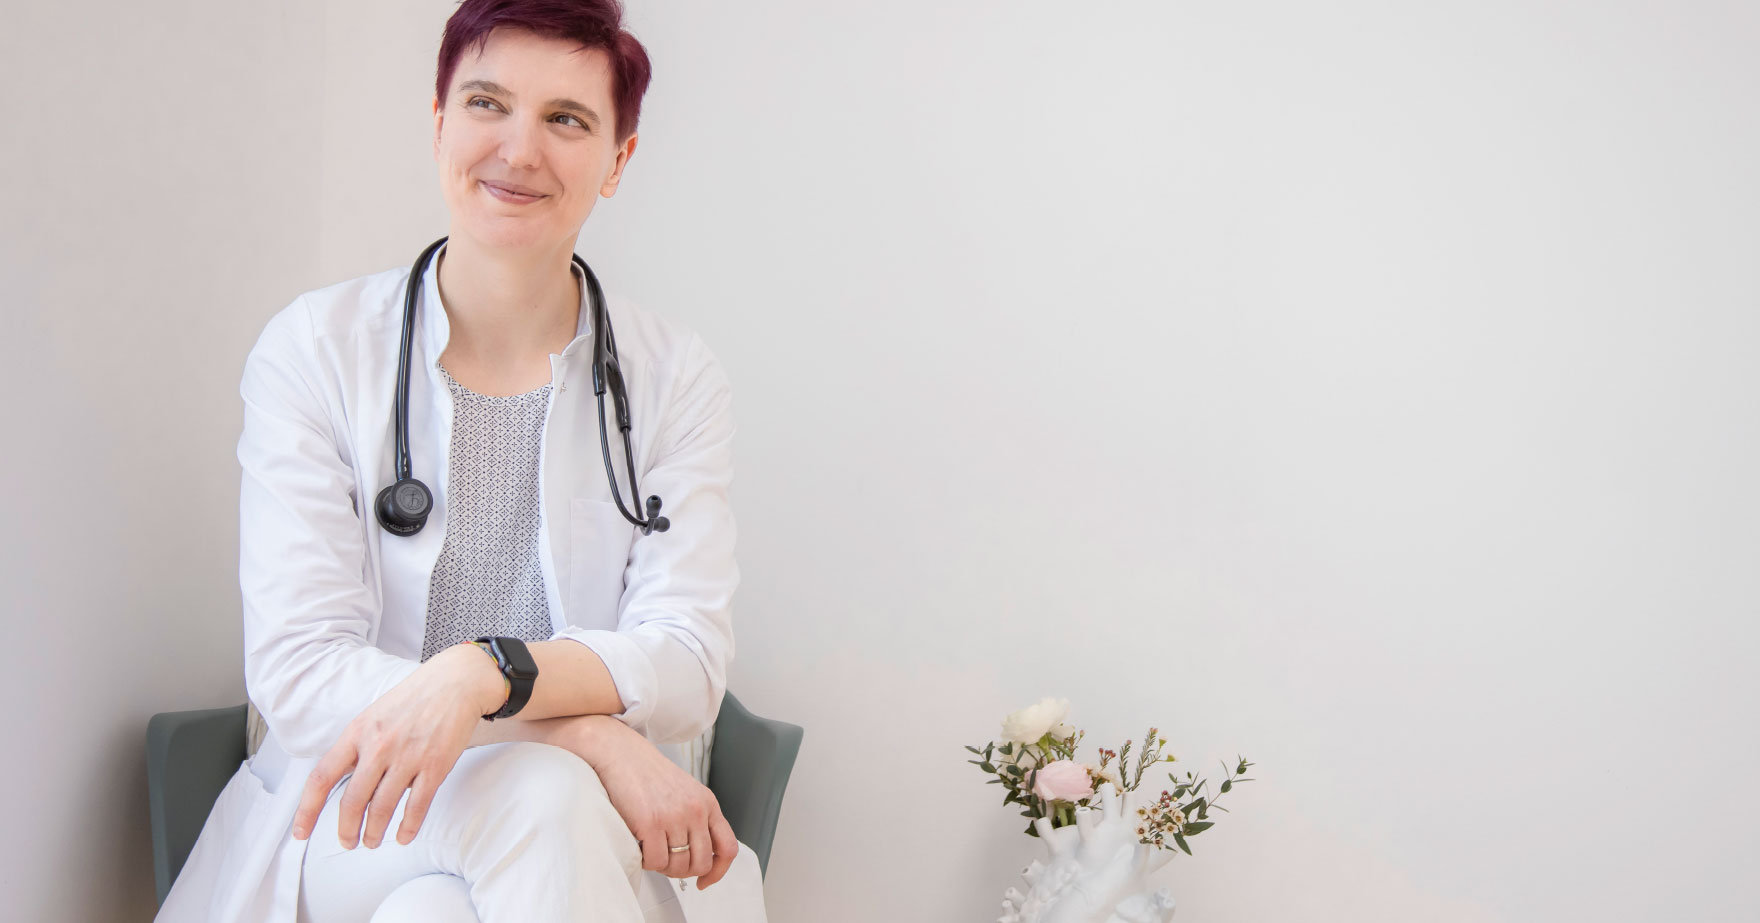 Dr. Dissauer, eine Dame mit rötlich gefärbten, kurzen Haaren, sitzt im Arztkittel und Stethoskop um den Hals auf einem Stuhl, blickt nach rechts und lächelt